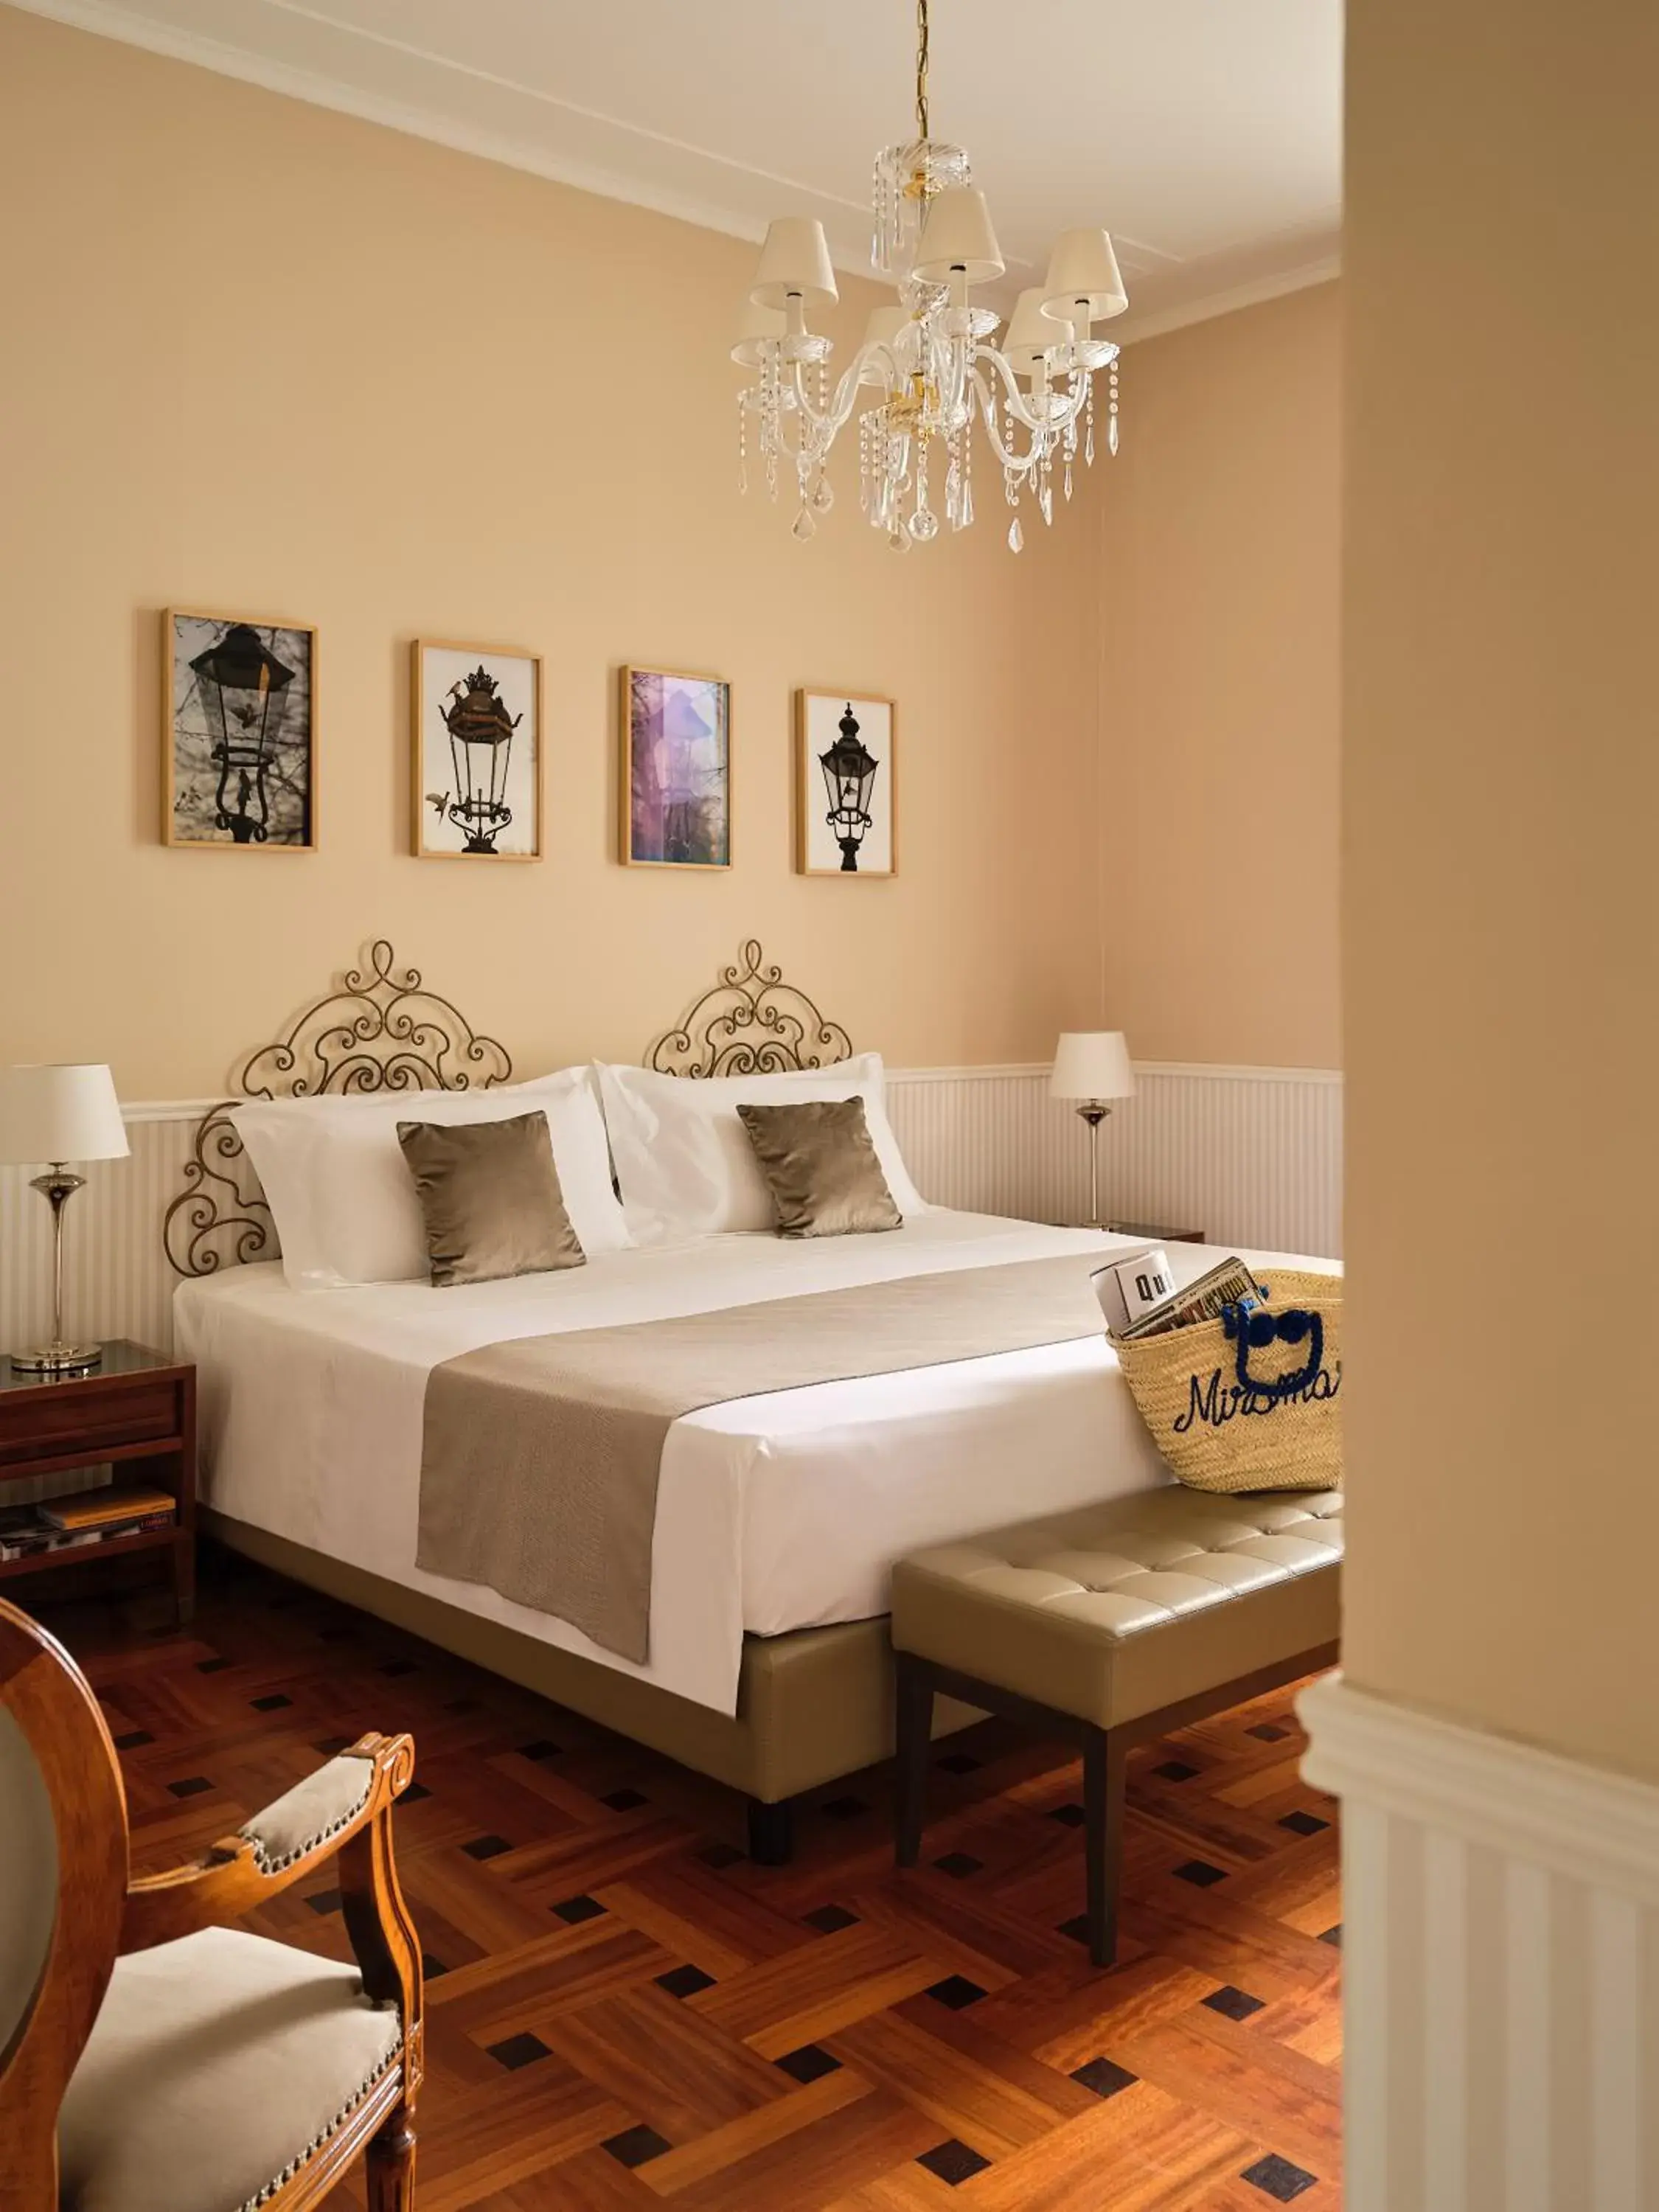 Bed in Grand Hotel Miramare